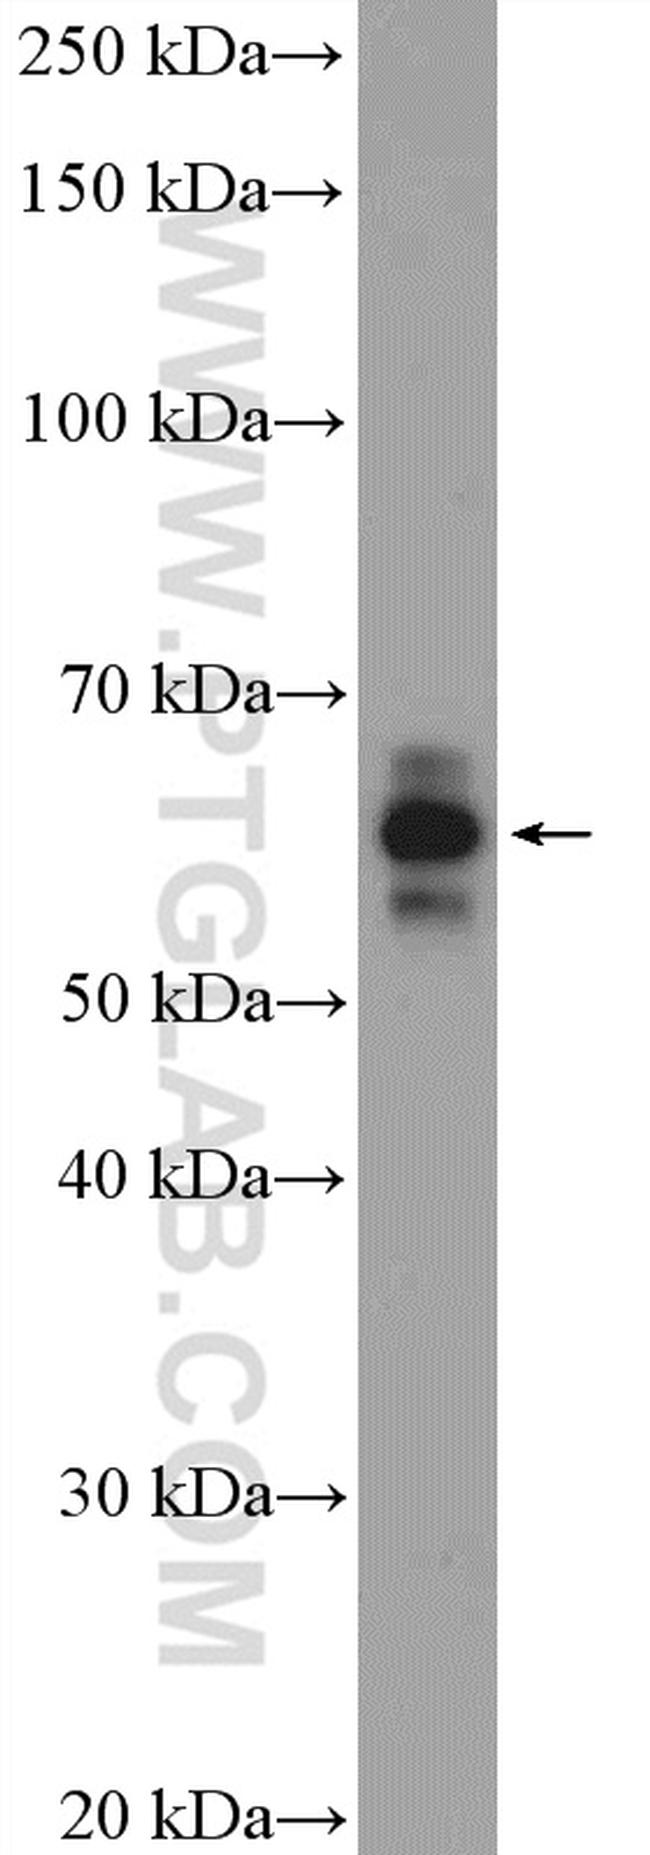 SF3A3 Antibody in Western Blot (WB)